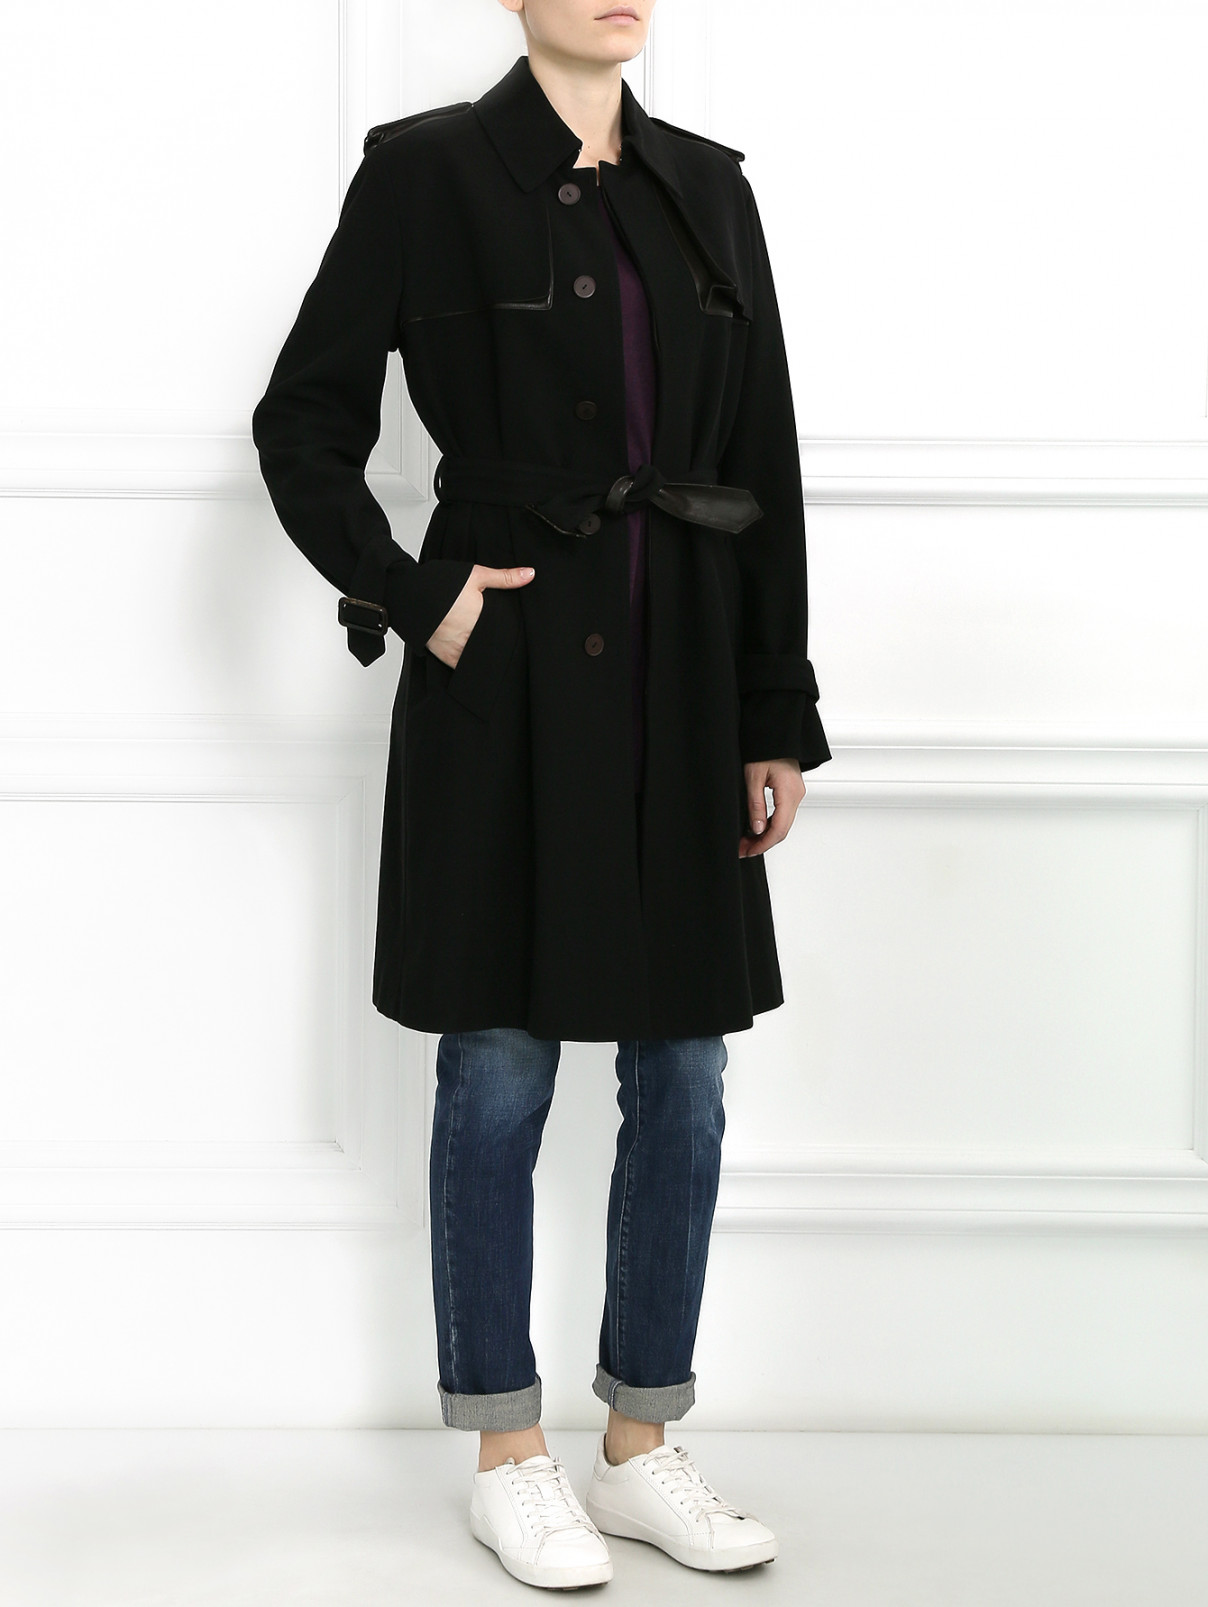 Пальто из хлопка с боковыми карманами Jean Paul Gaultier  –  Модель Общий вид  – Цвет:  Черный